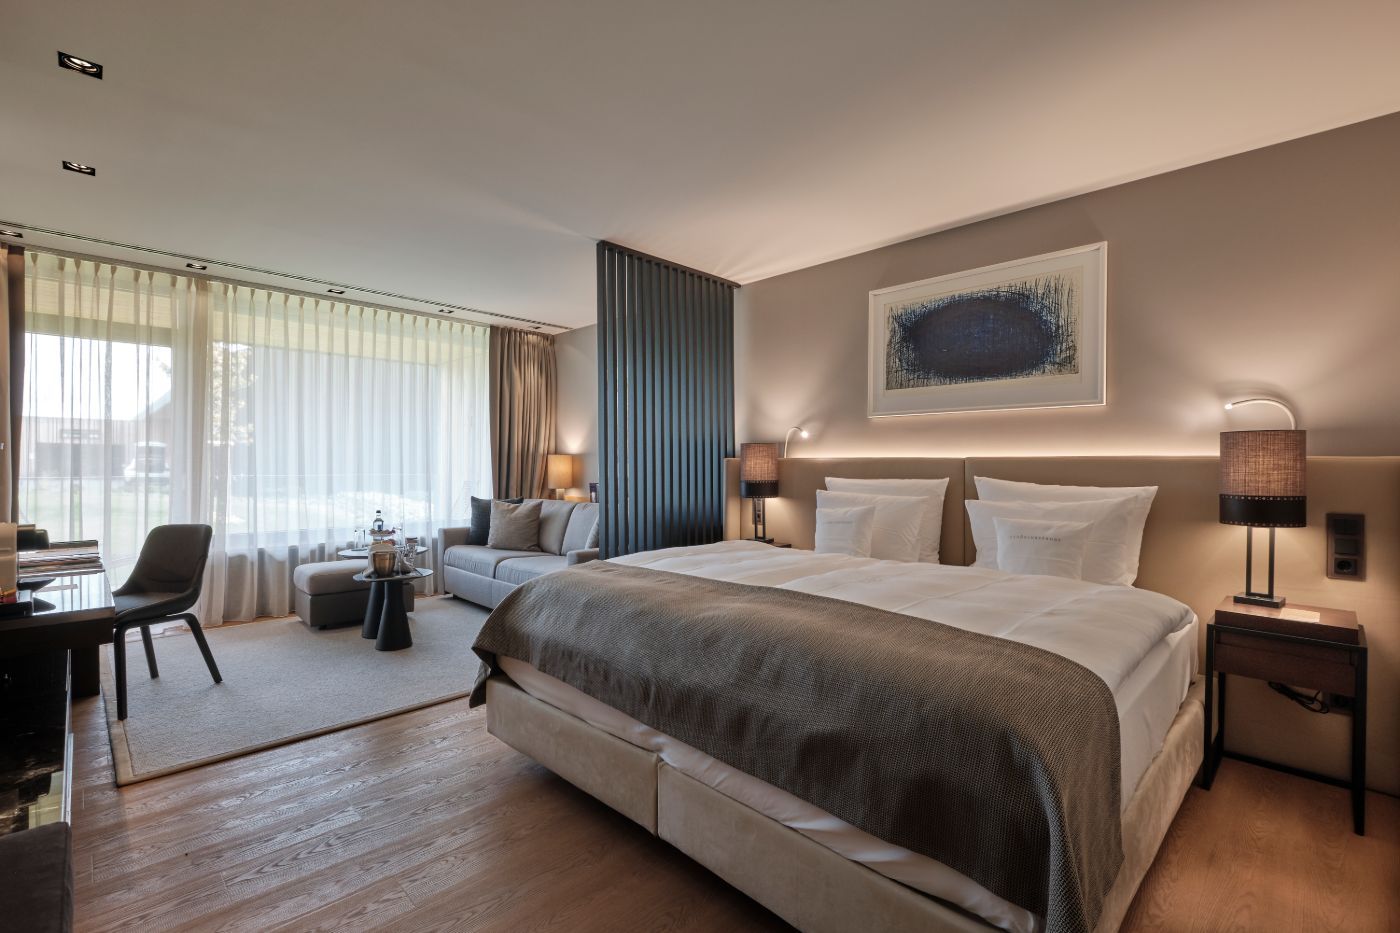 Blick auf ein Doppelbett neben dem Loungebereich mit Sofa und Beistelltisch im 5 Sterne Hotel im Schwarzwald